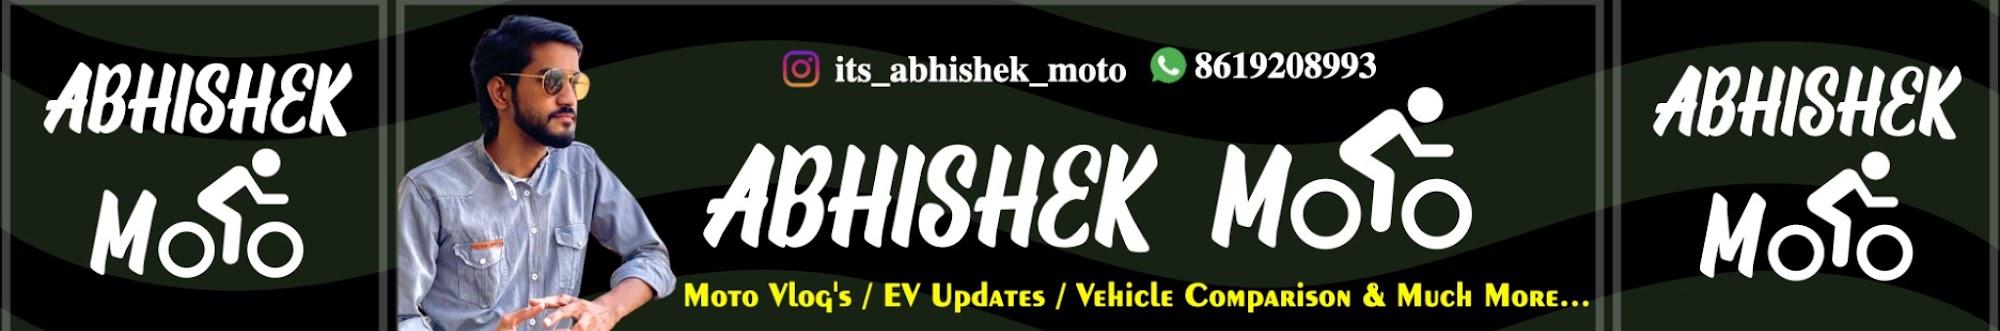 Abhishek Moto